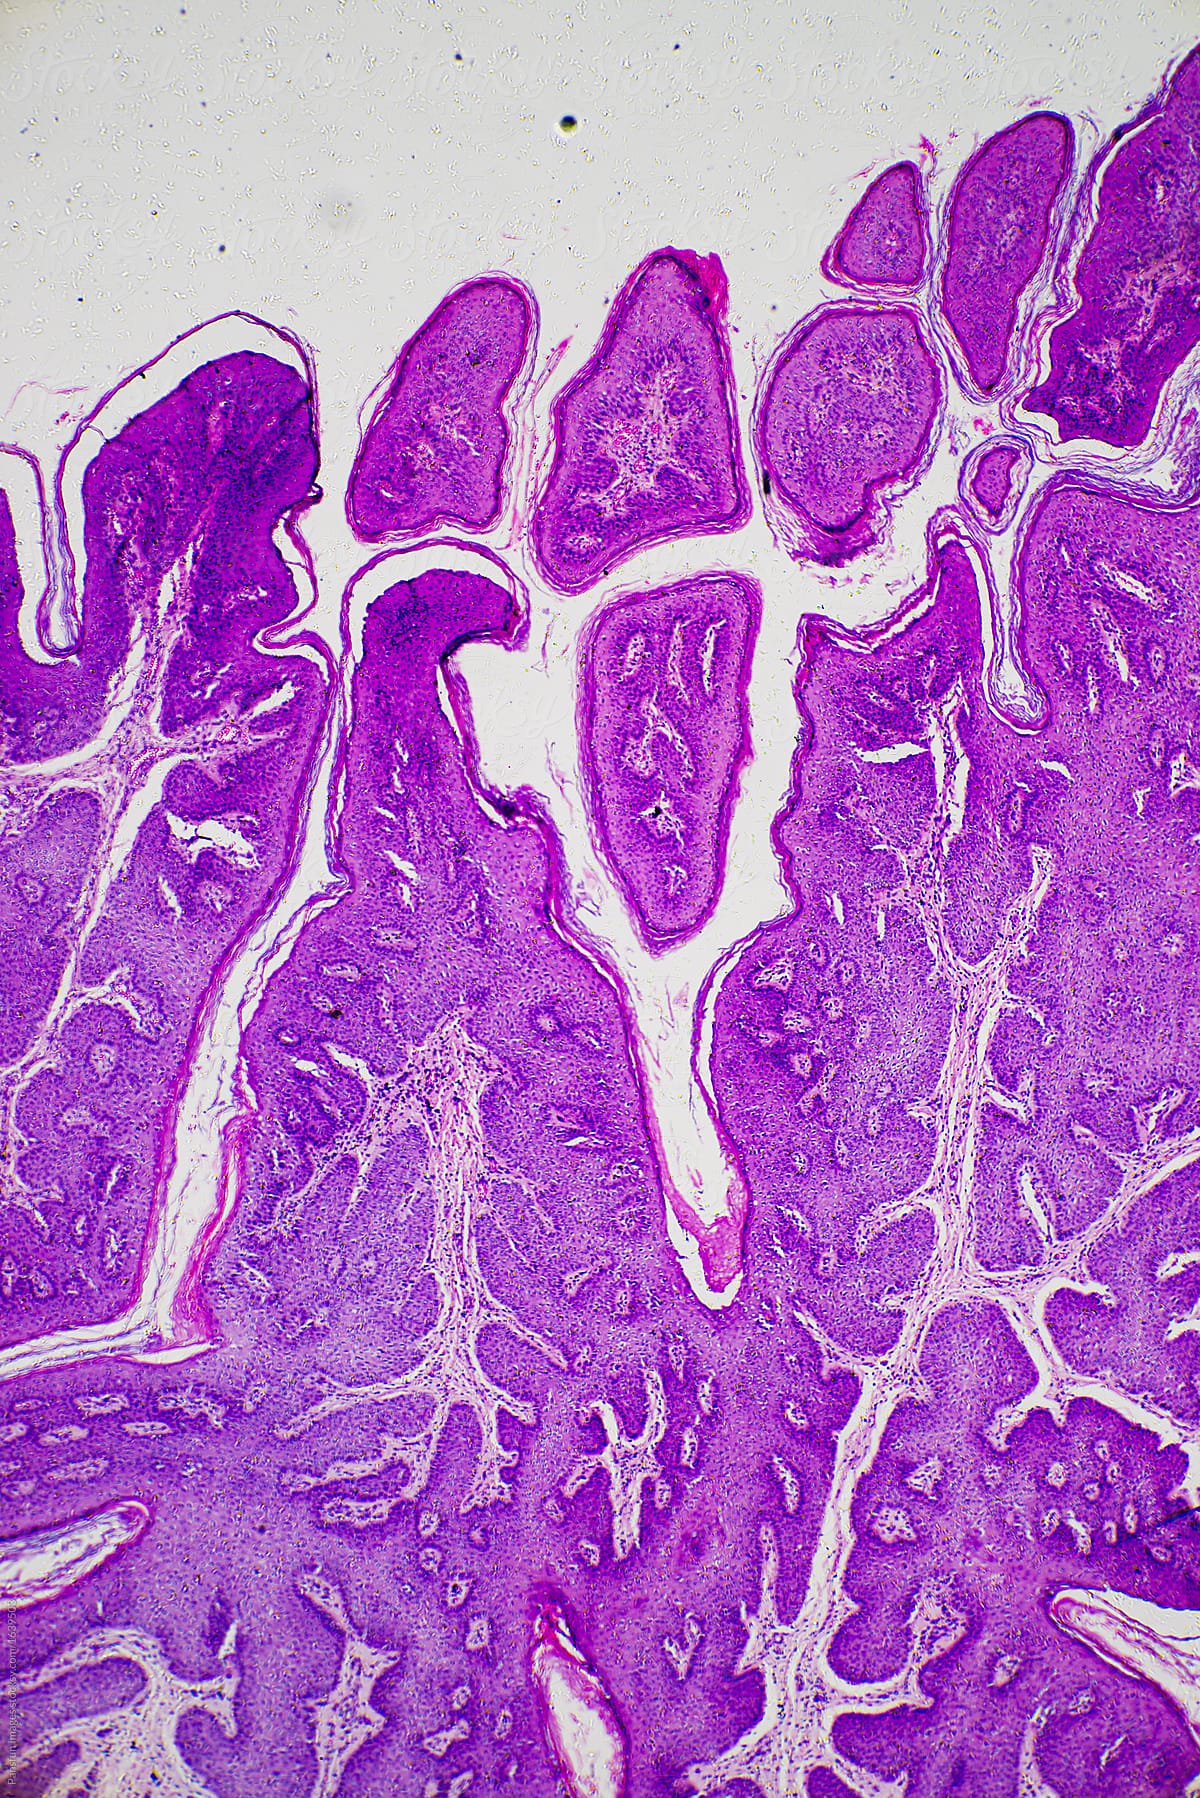 Skin papilloma of human micrograph.